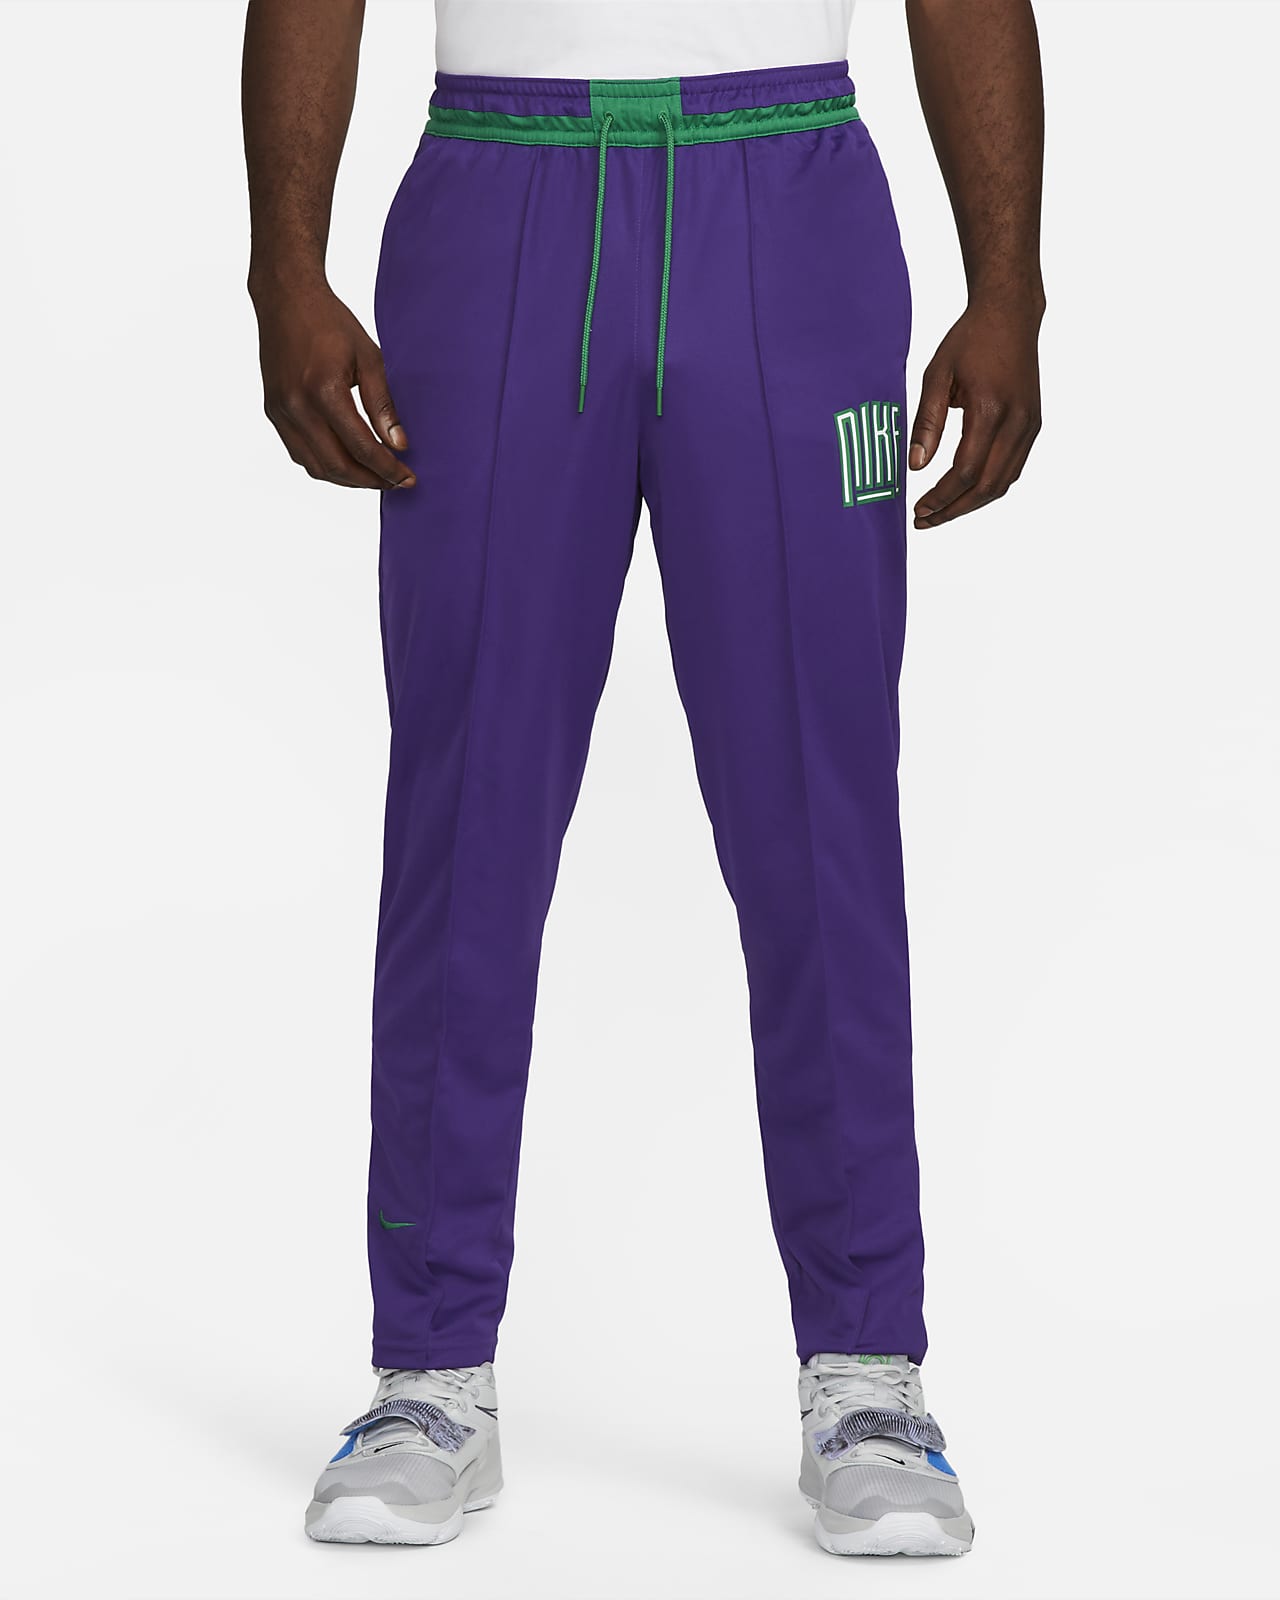 Pantalones de básquetbol para hombre Nike Dri-FIT